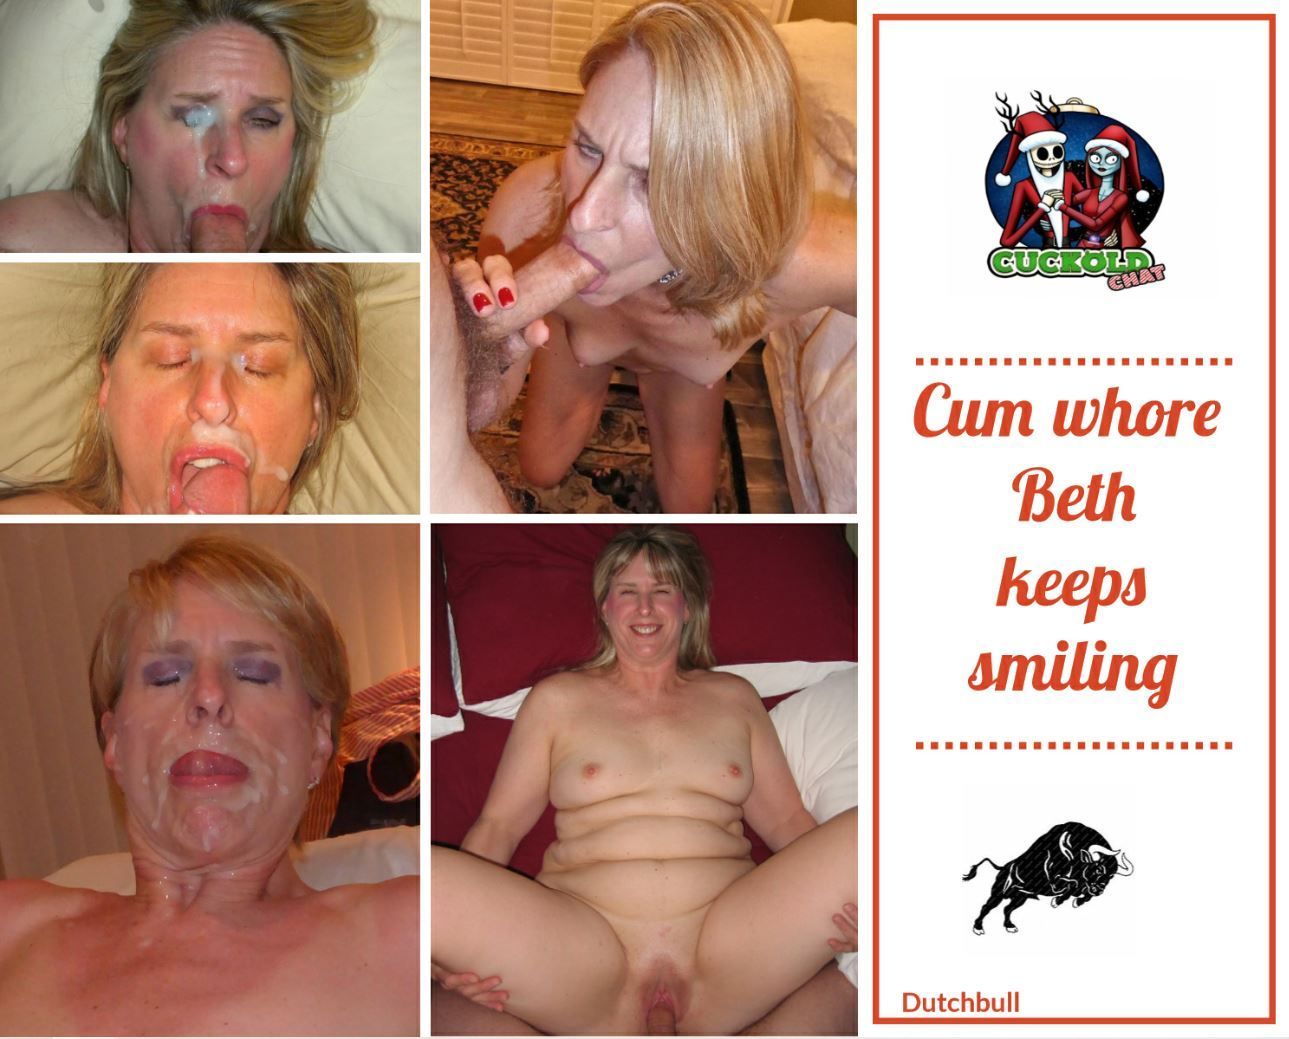 Beth - exposed cum whore